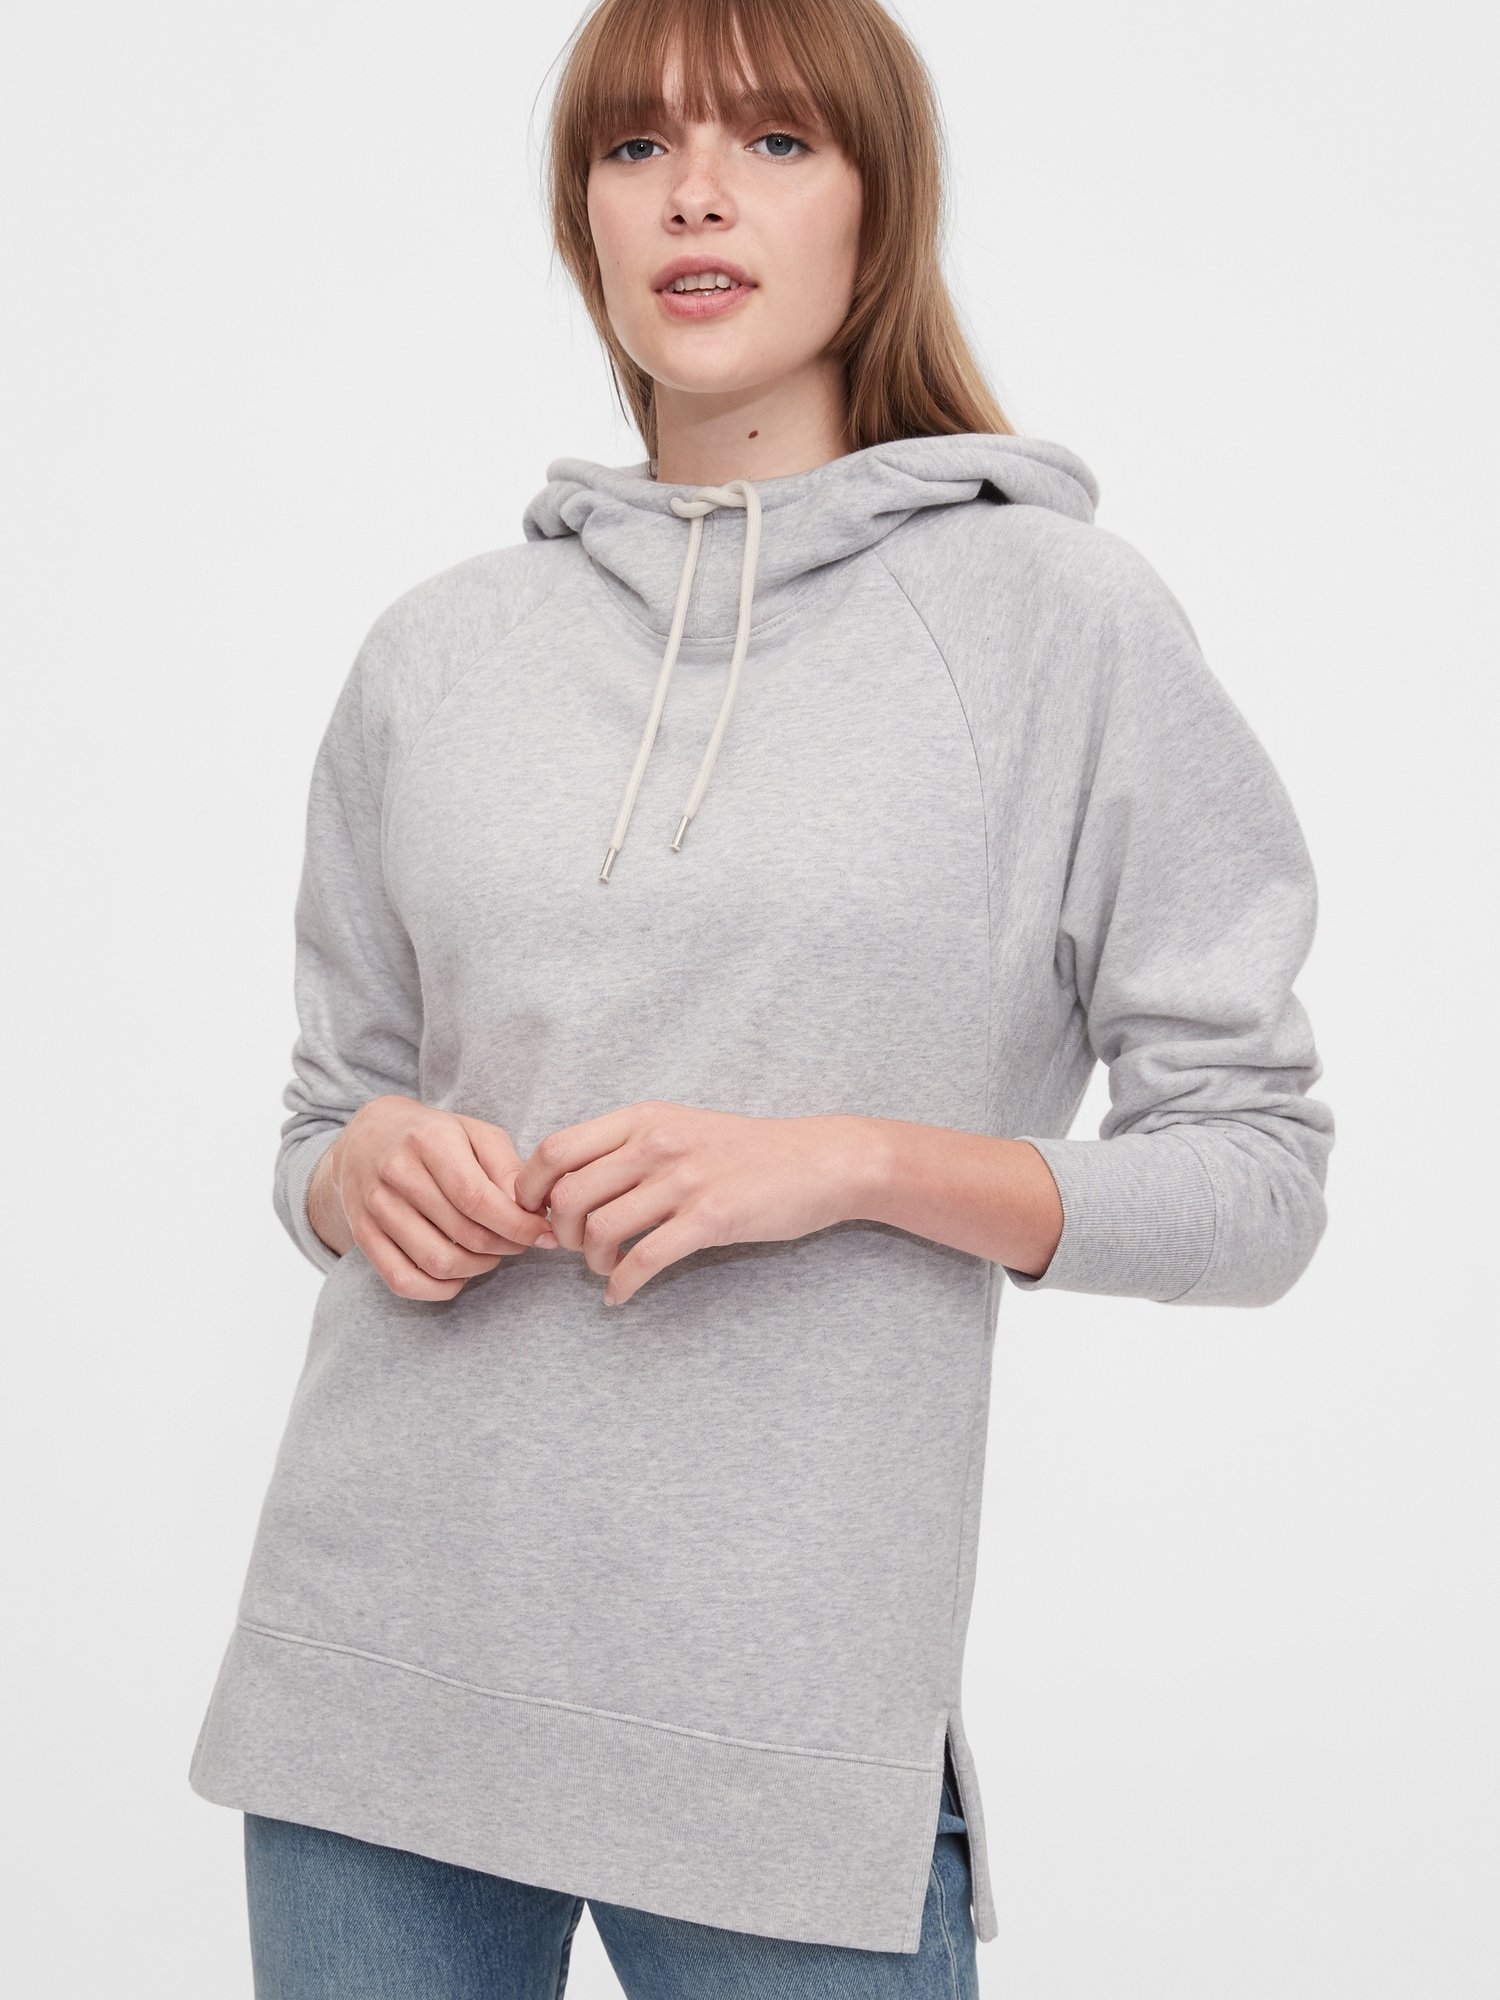 Maternity Kapüşonlu Sweatshirt product image